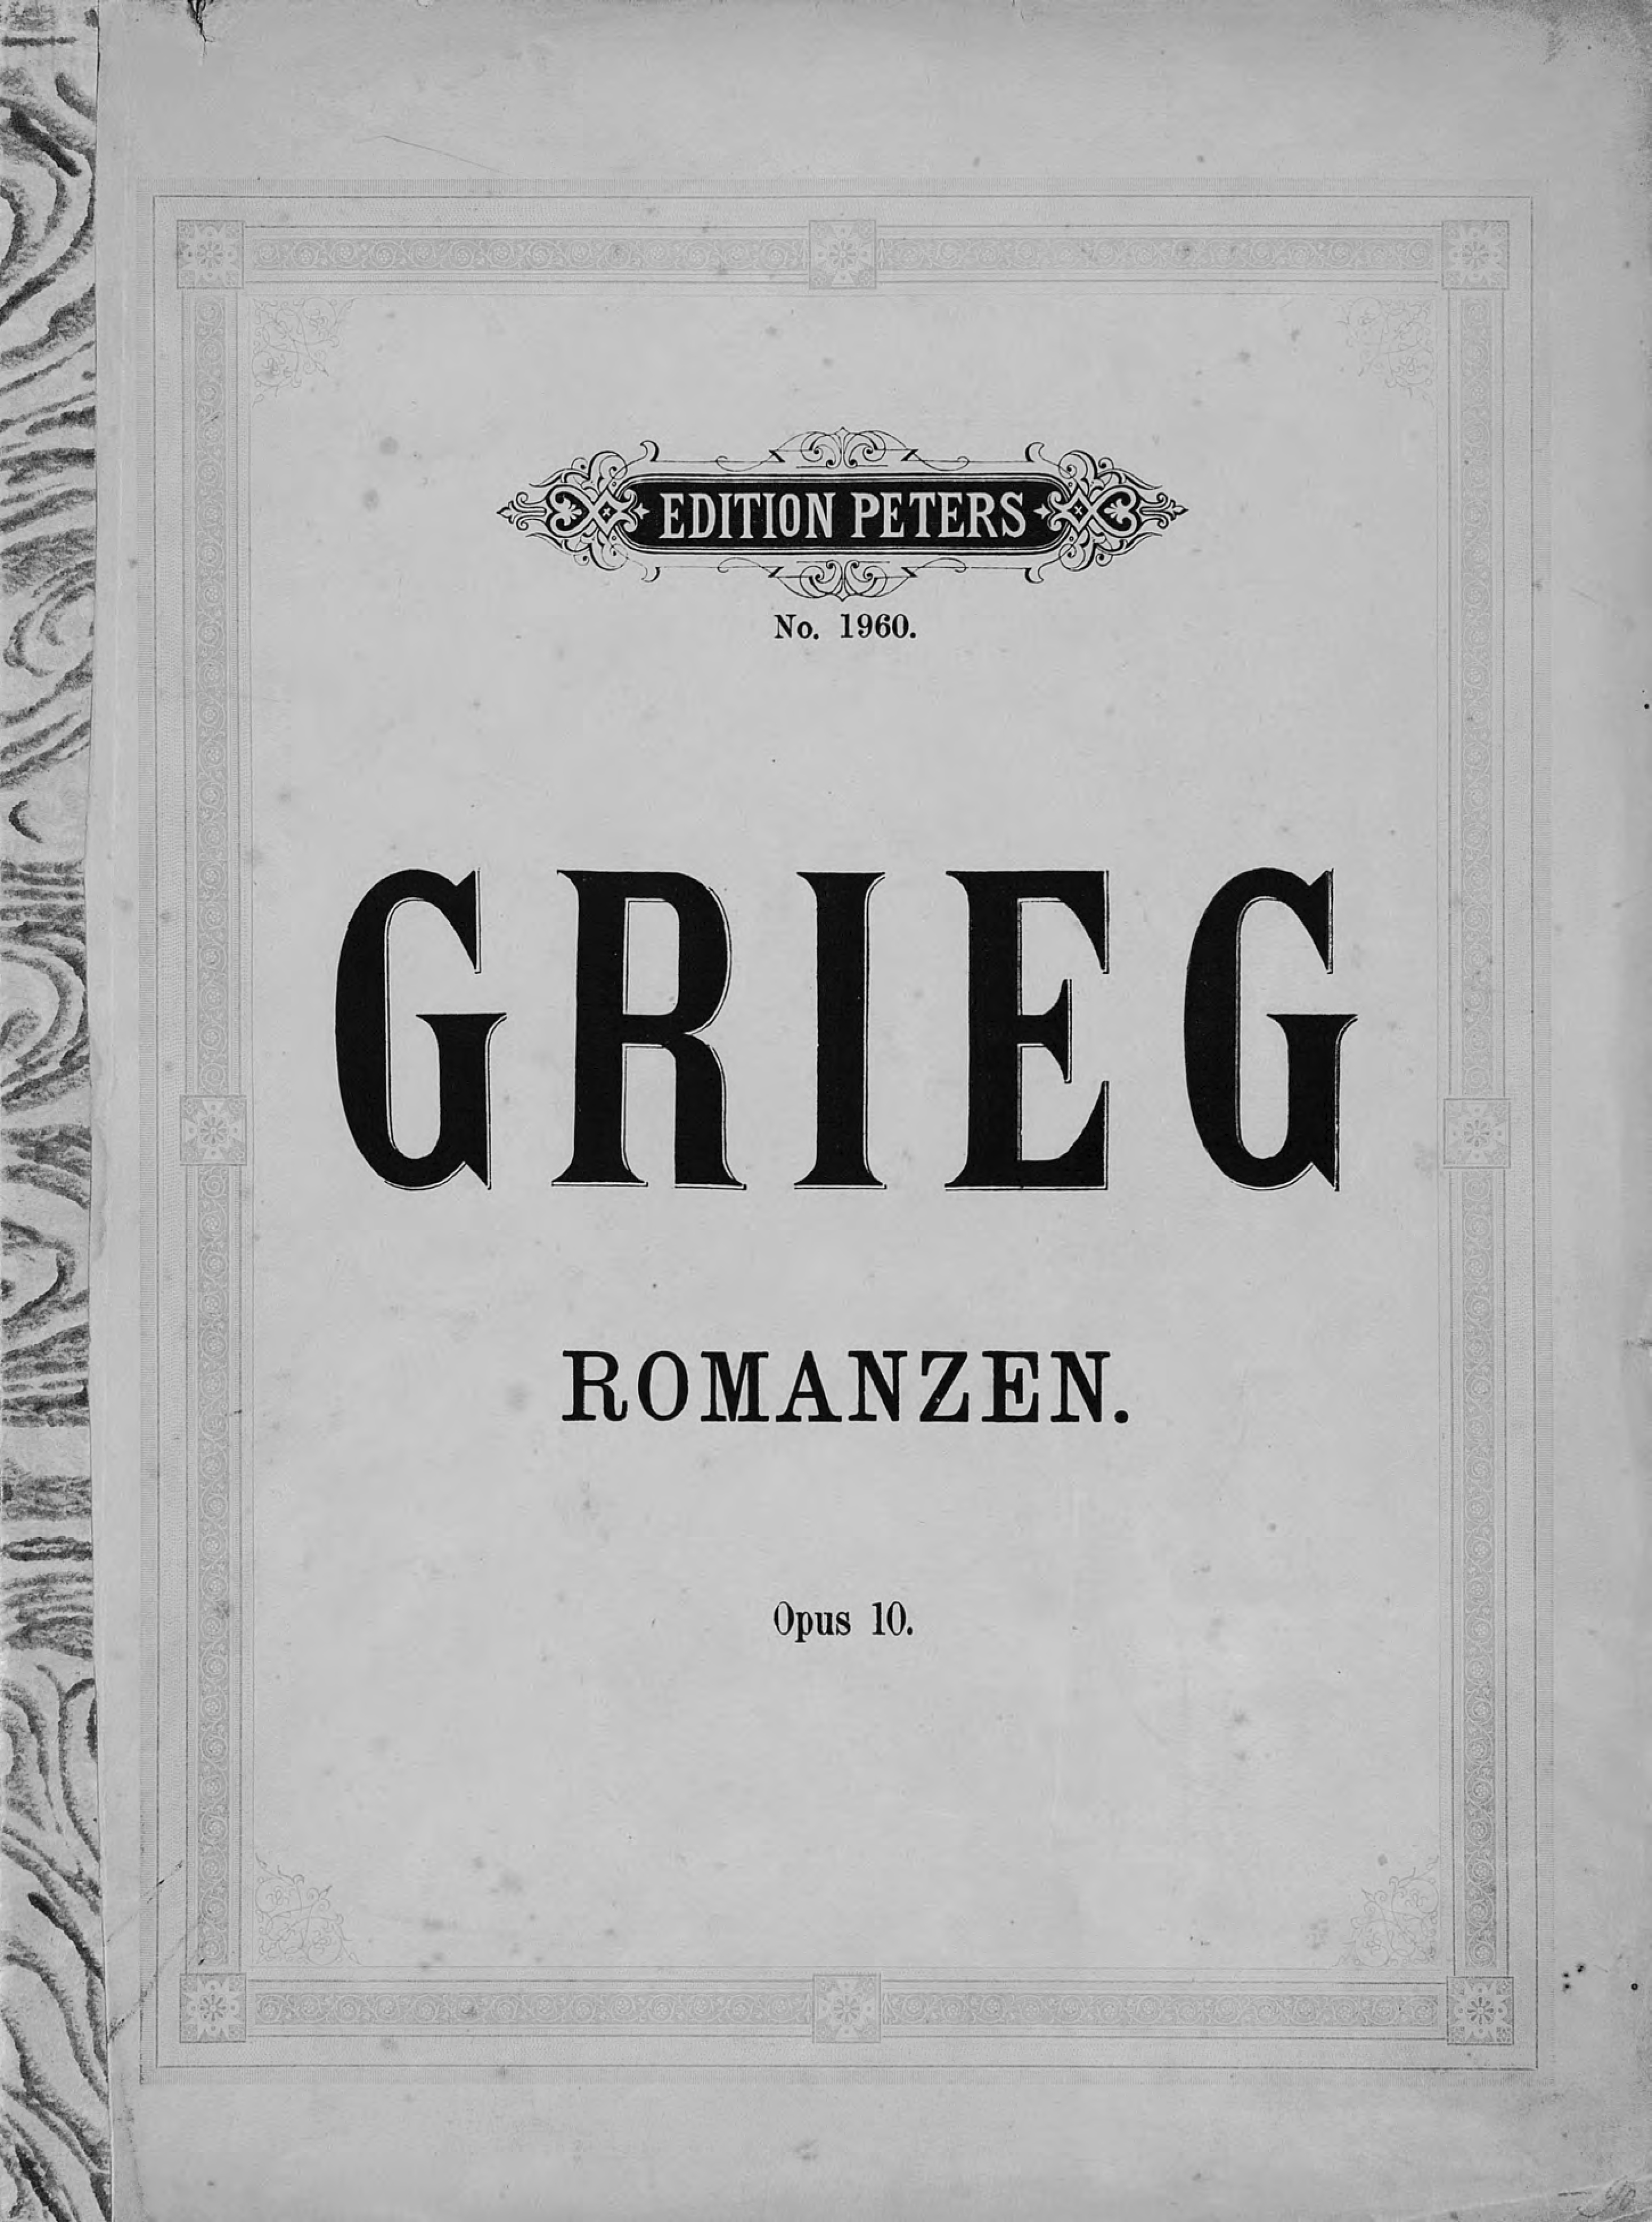 Vier Romanzen fur eine Singstimme mit Klavierbegleitung v. Ed. Grieg